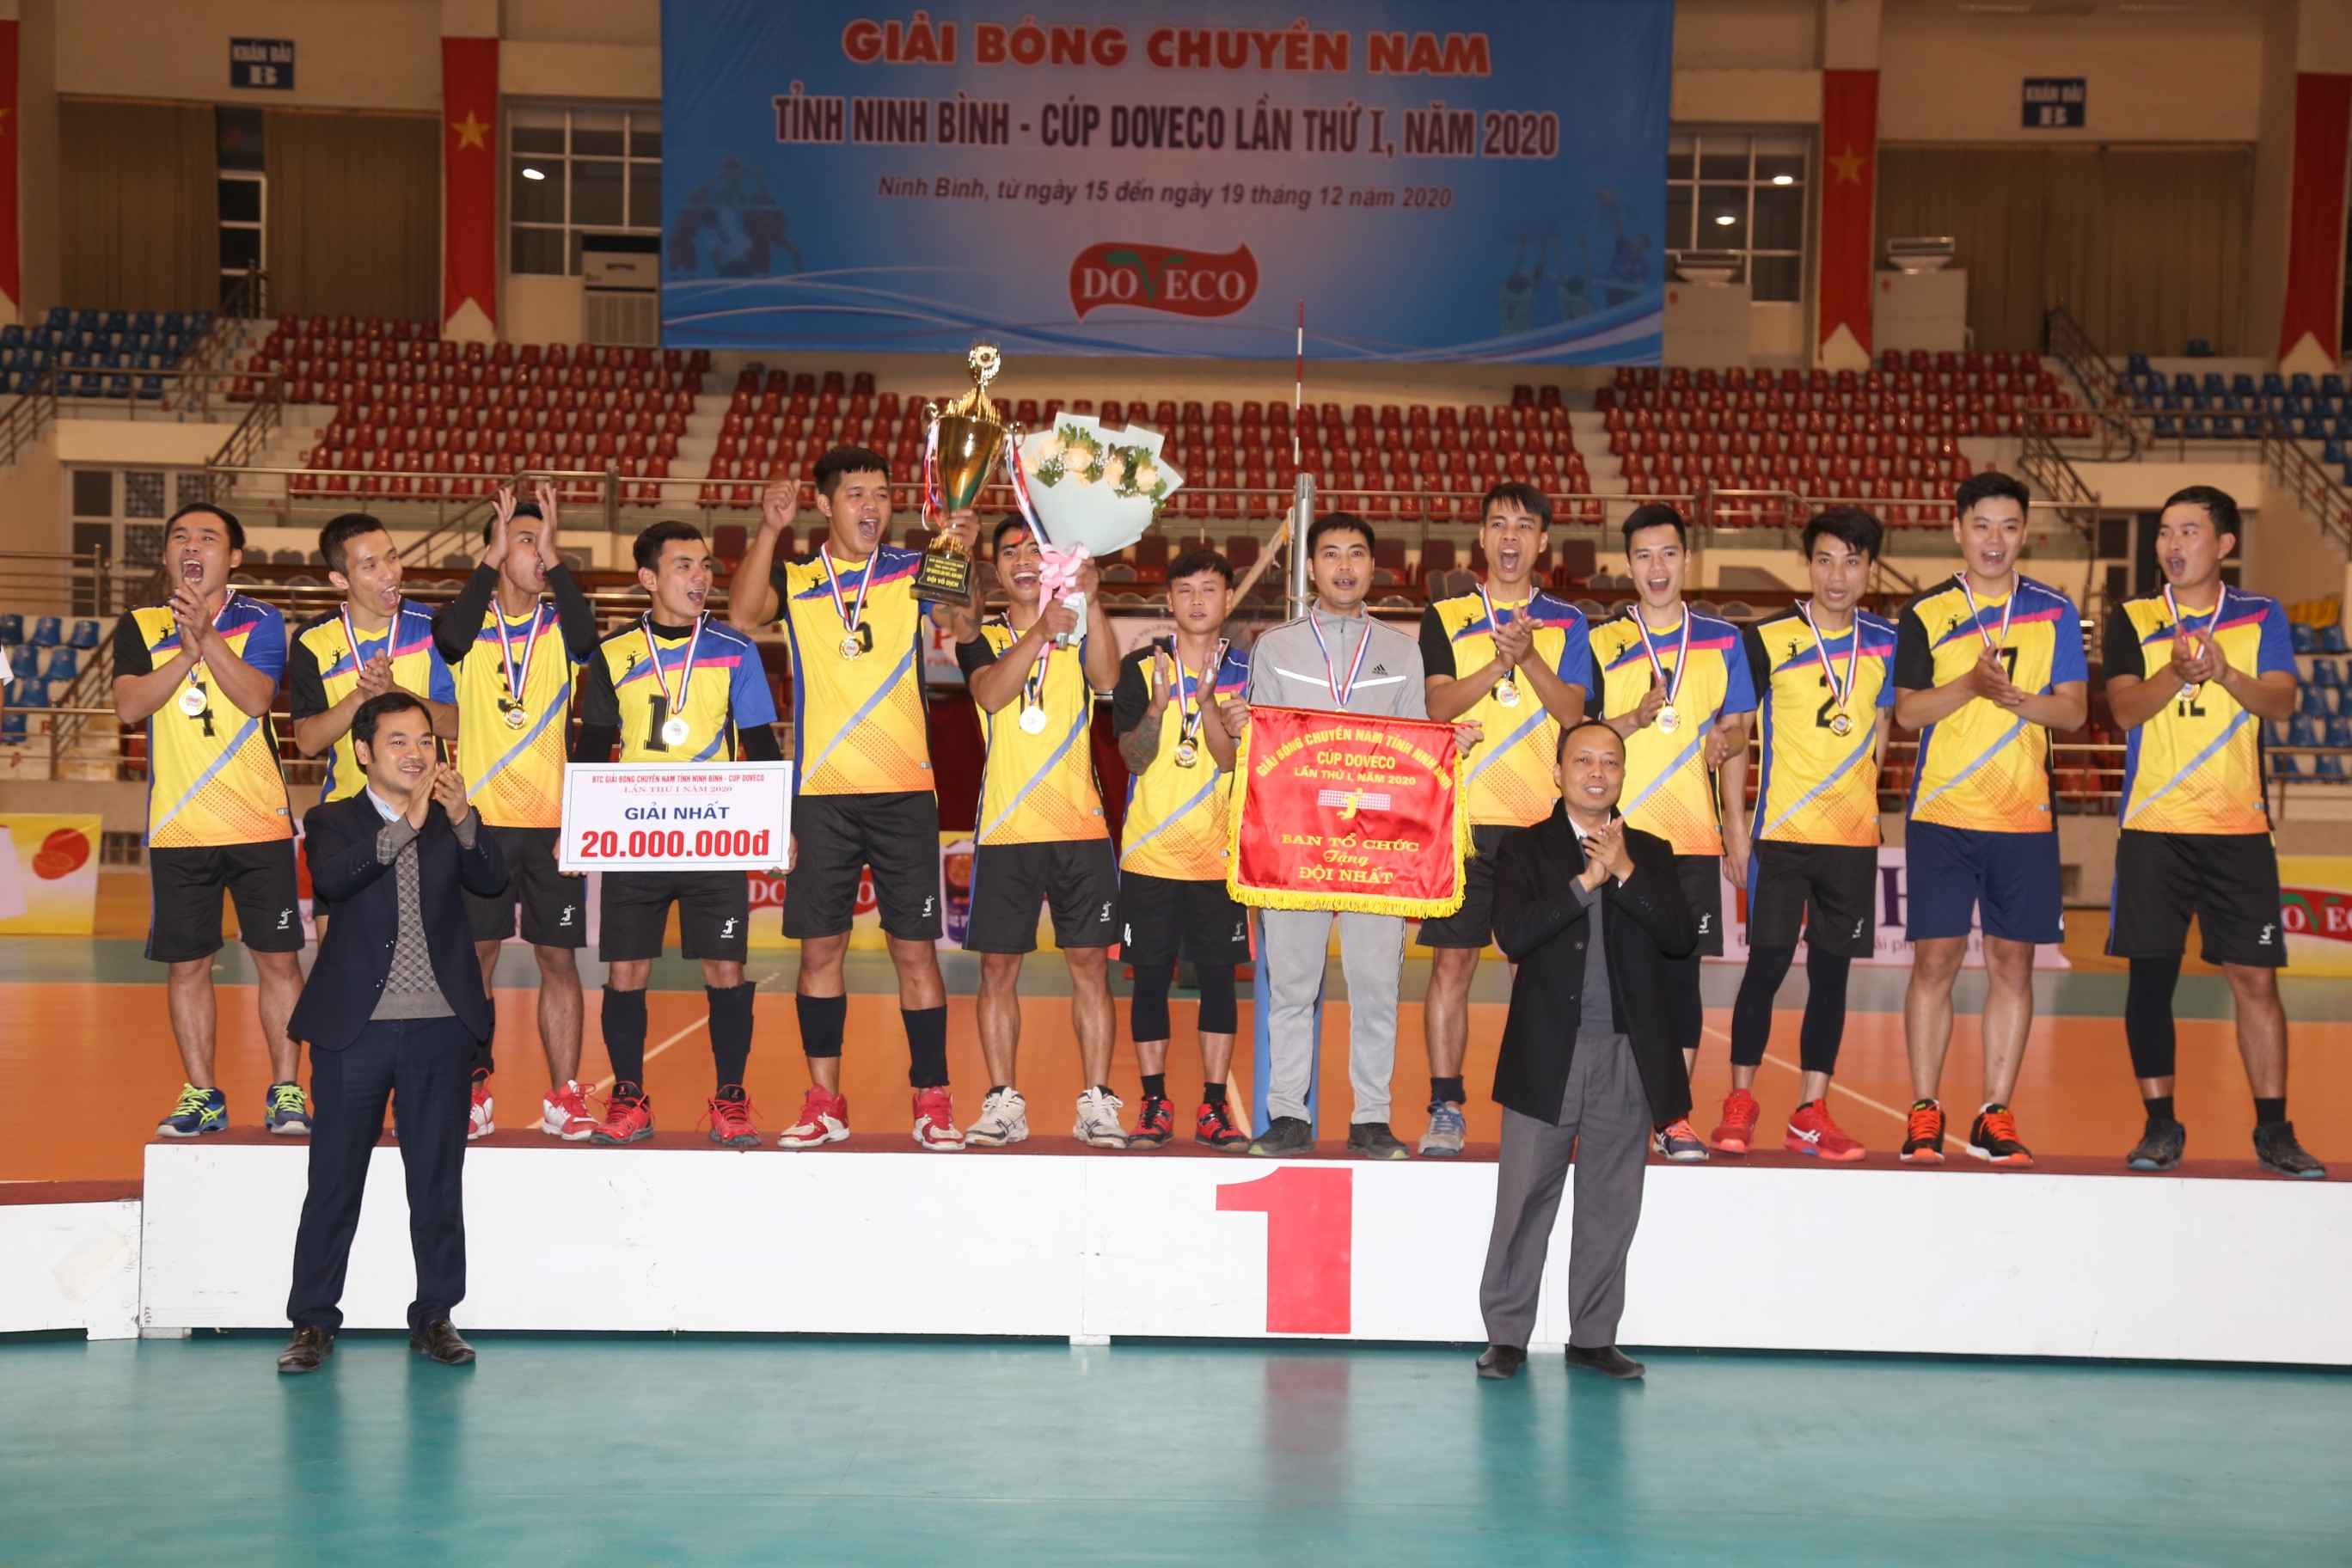 Giải Bóng chuyền nam tỉnh Ninh Bình Cup DOVECO lần thứ I năm 2020.